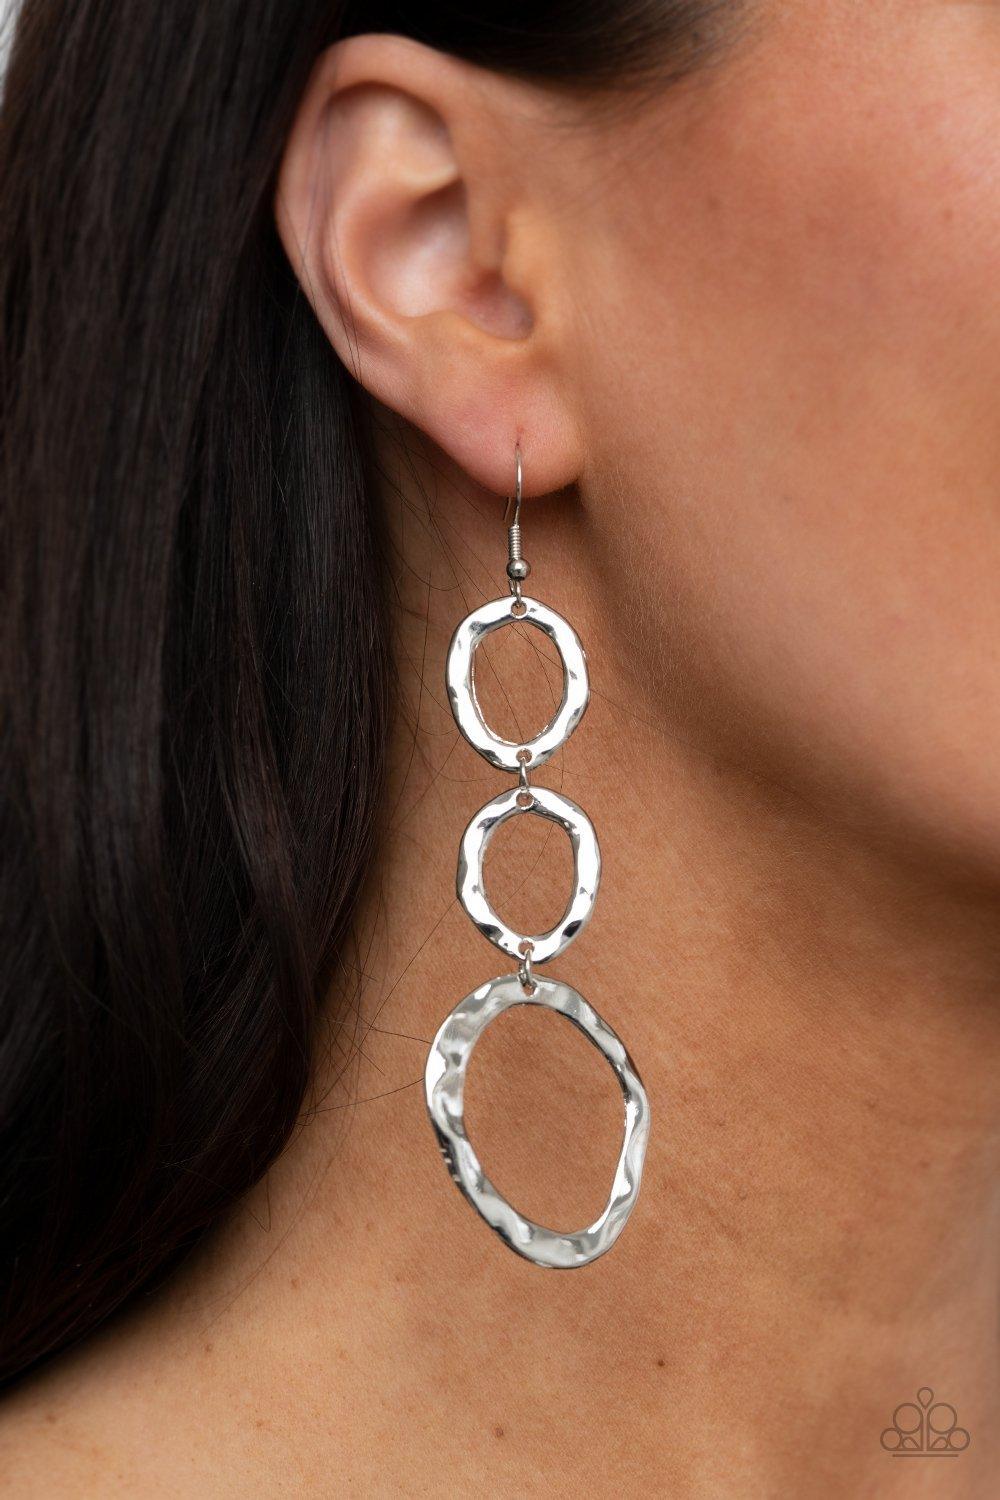 So OVAL It! Silver Earrings - Jewelry By Bretta